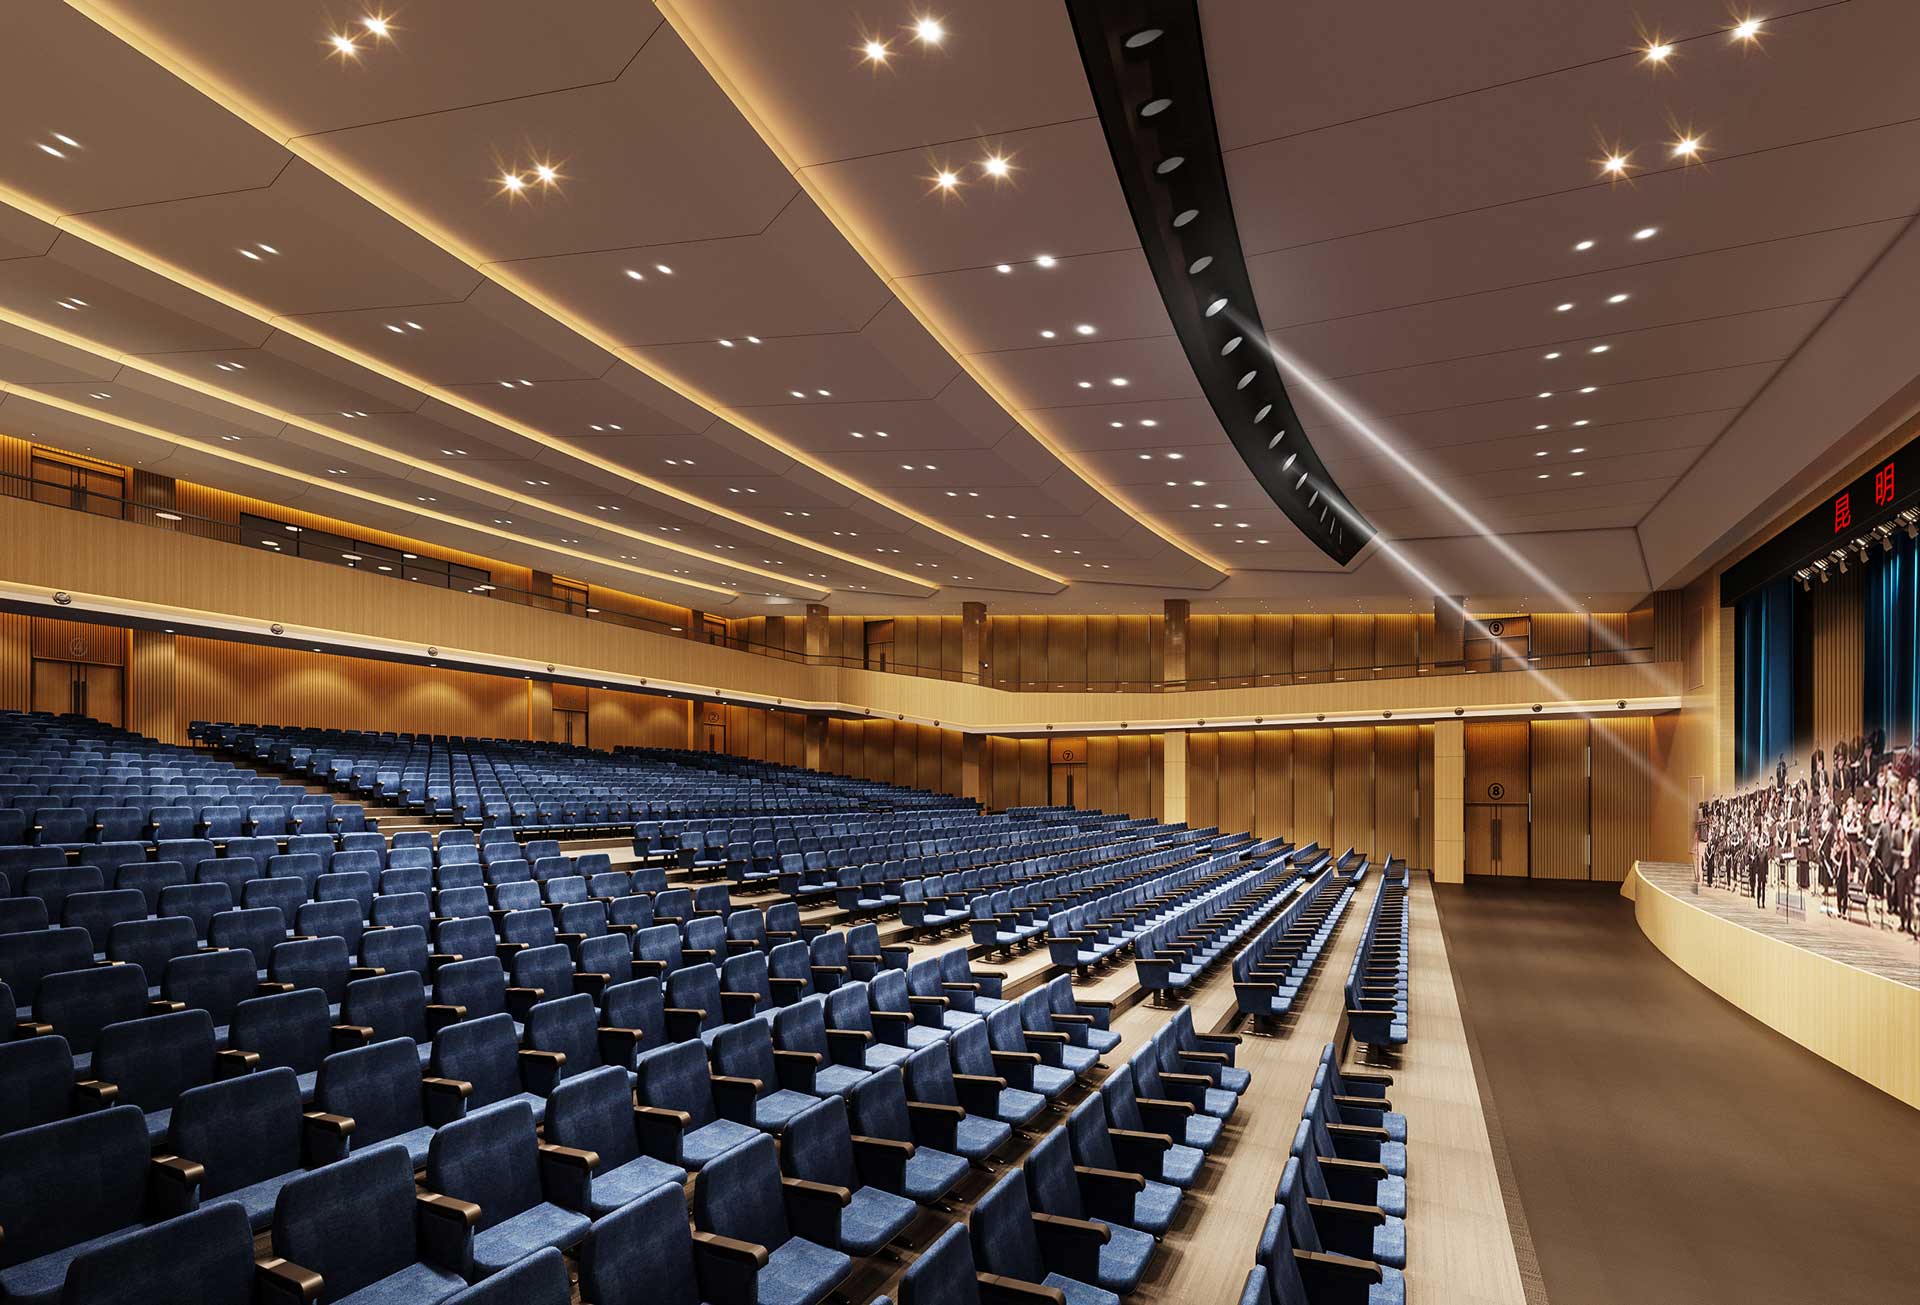 TITAN Property Awards - Auditorium design of Medical College